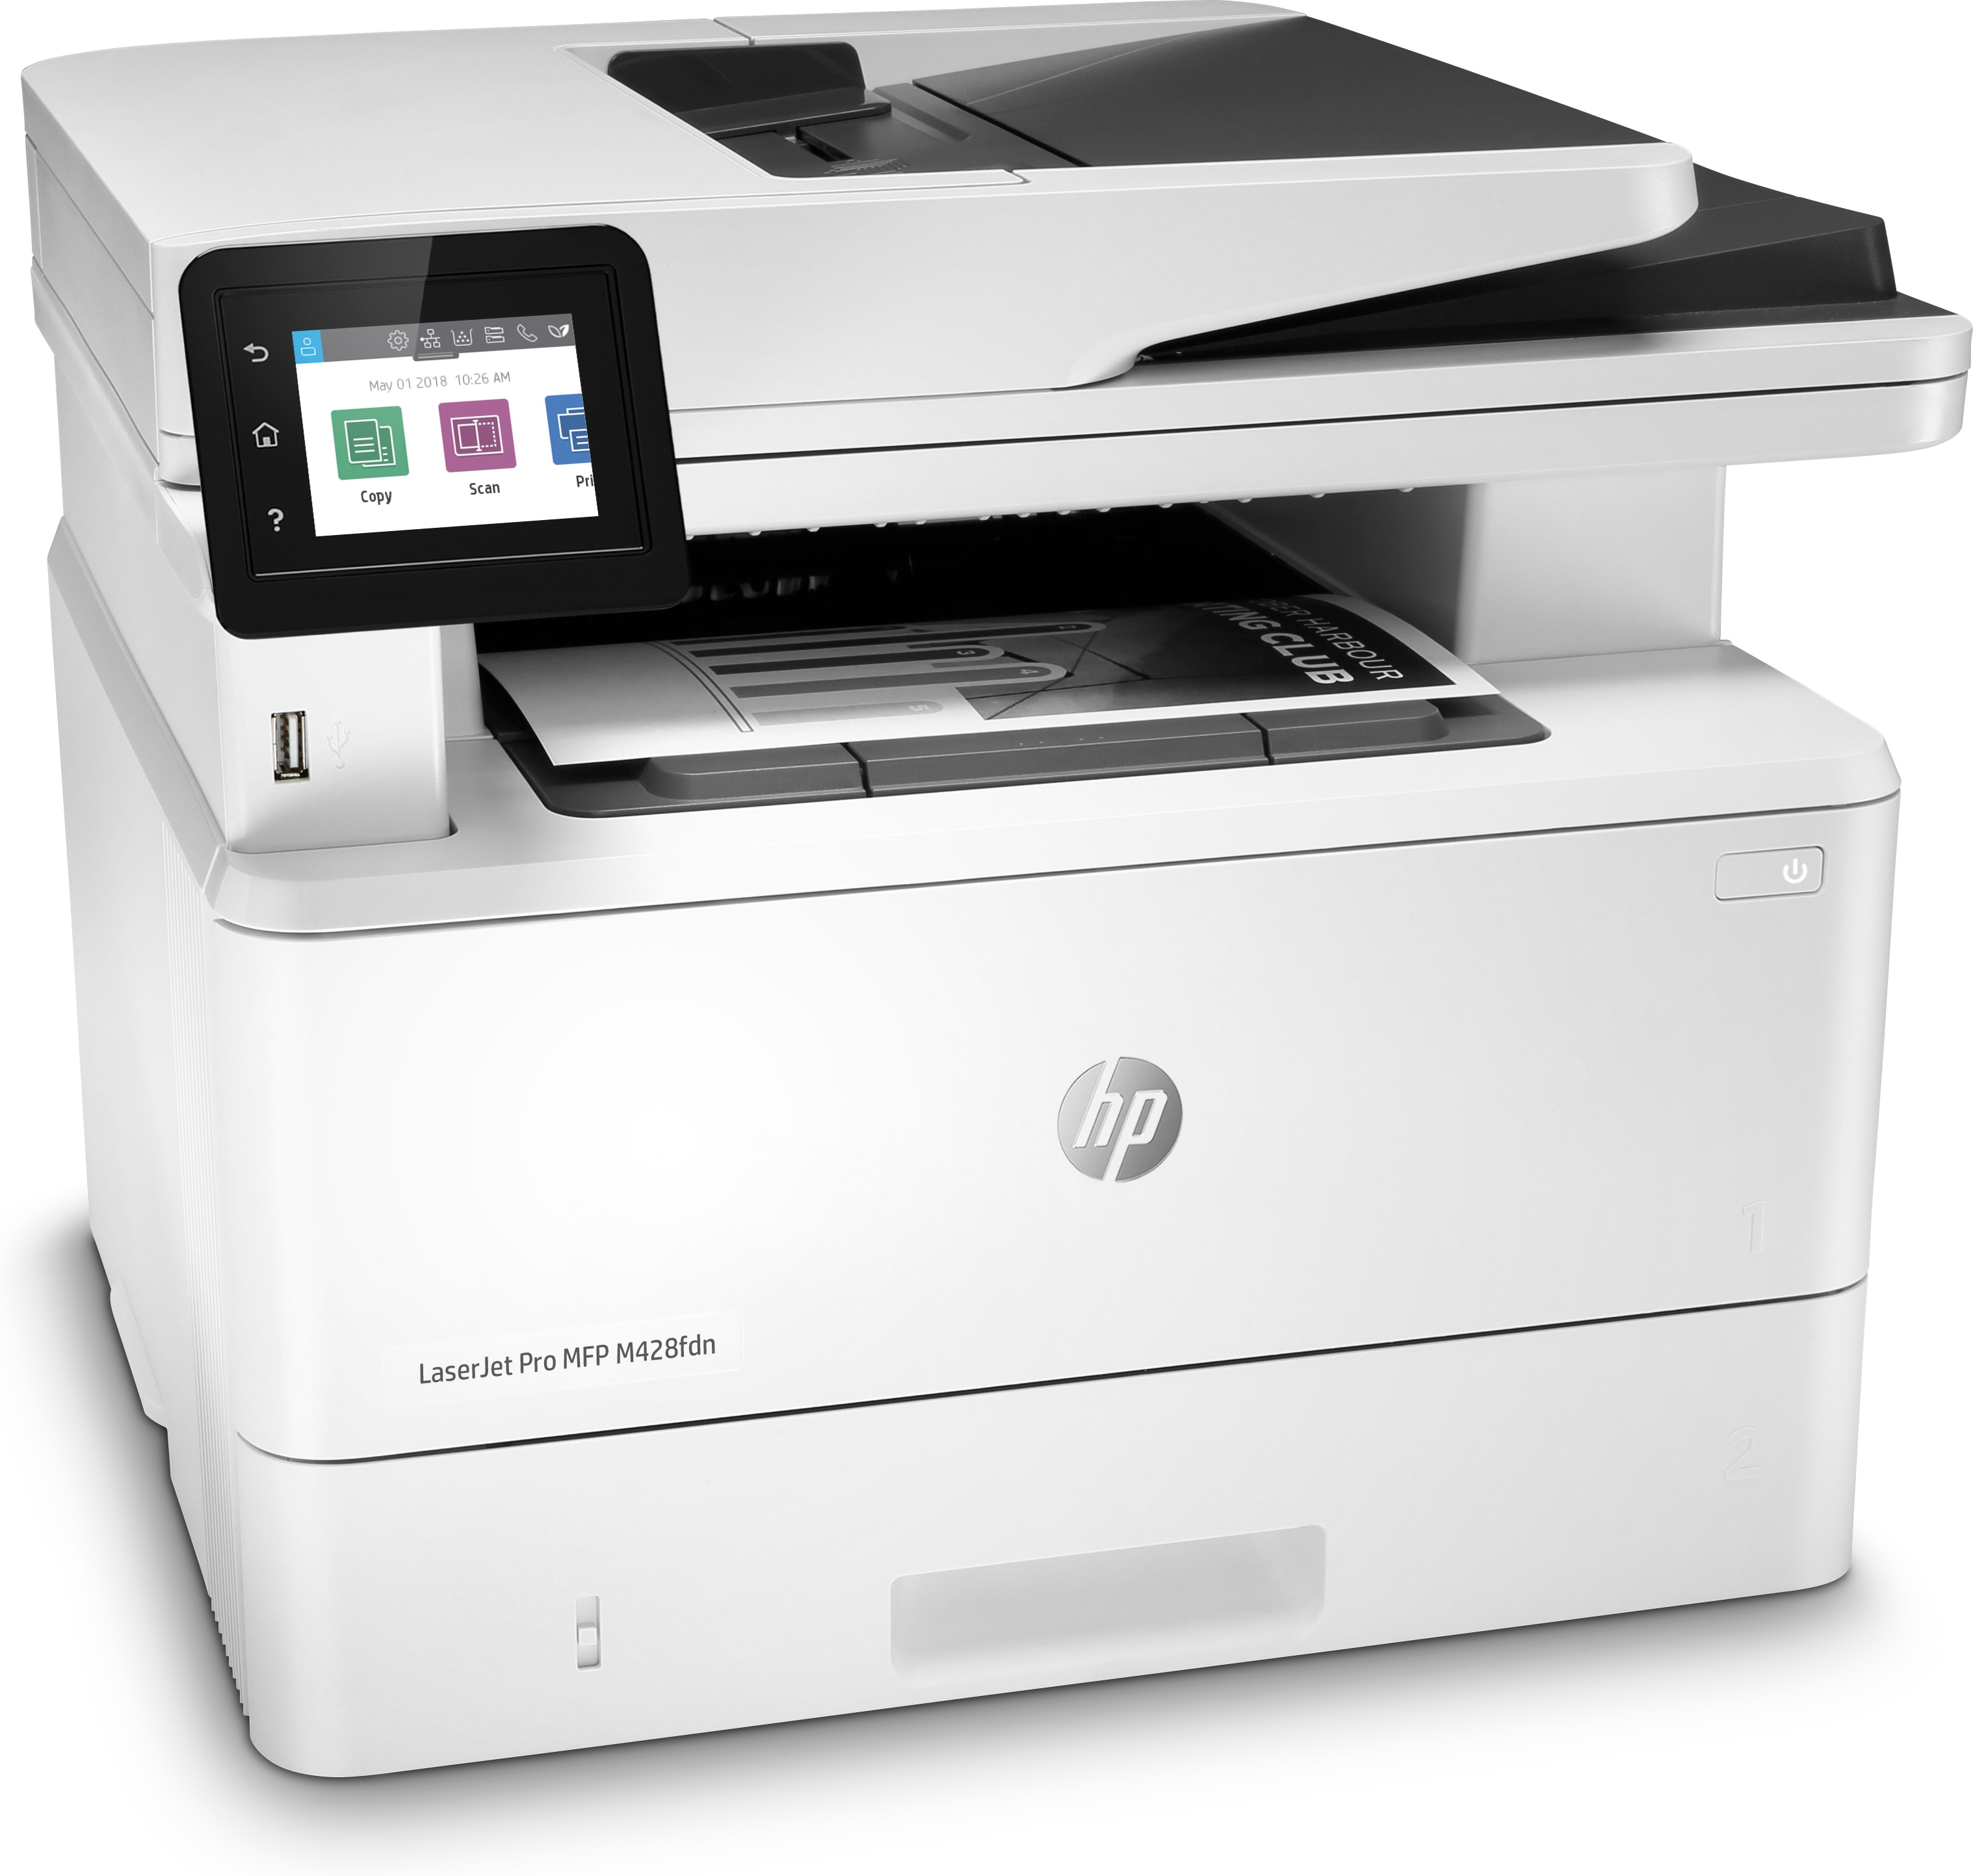 HP LaserJet Pro Stampante multifunzione M428fdn, Stampa, copia, scansione, fax, e-mail, scansione verso e-mail; fronte/retro; [W1A29A]